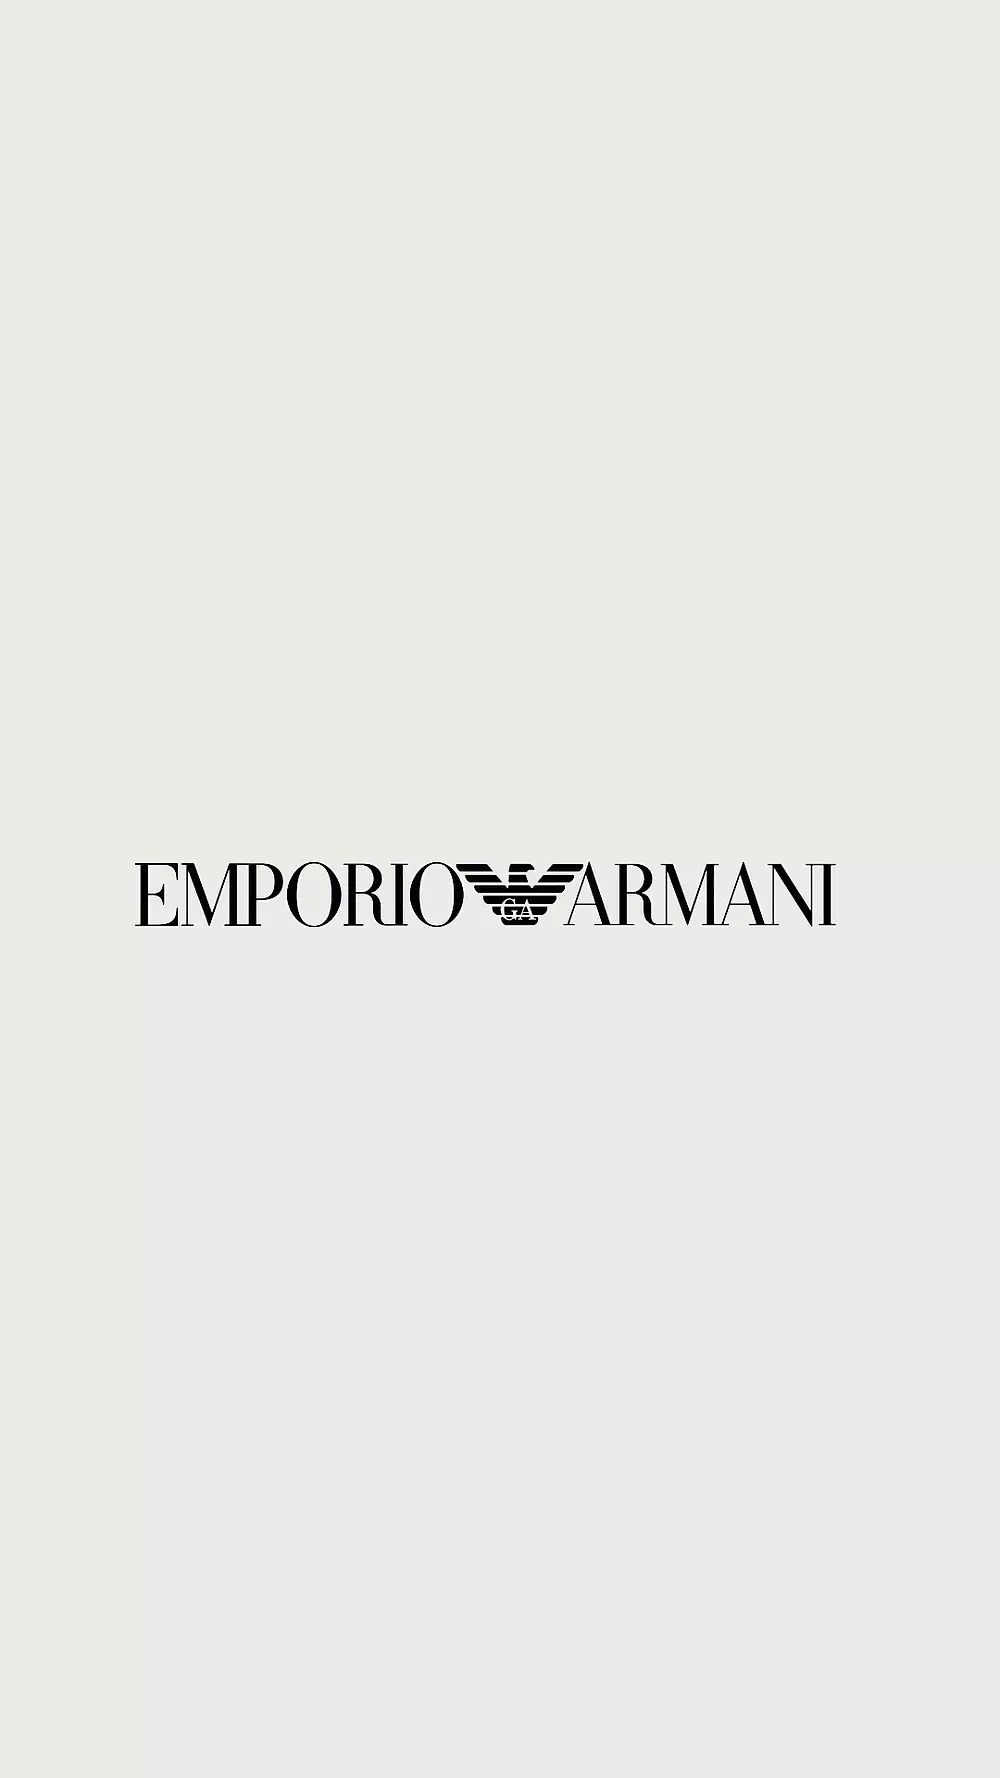 Armani Emporio - accessories for unique a style Customized